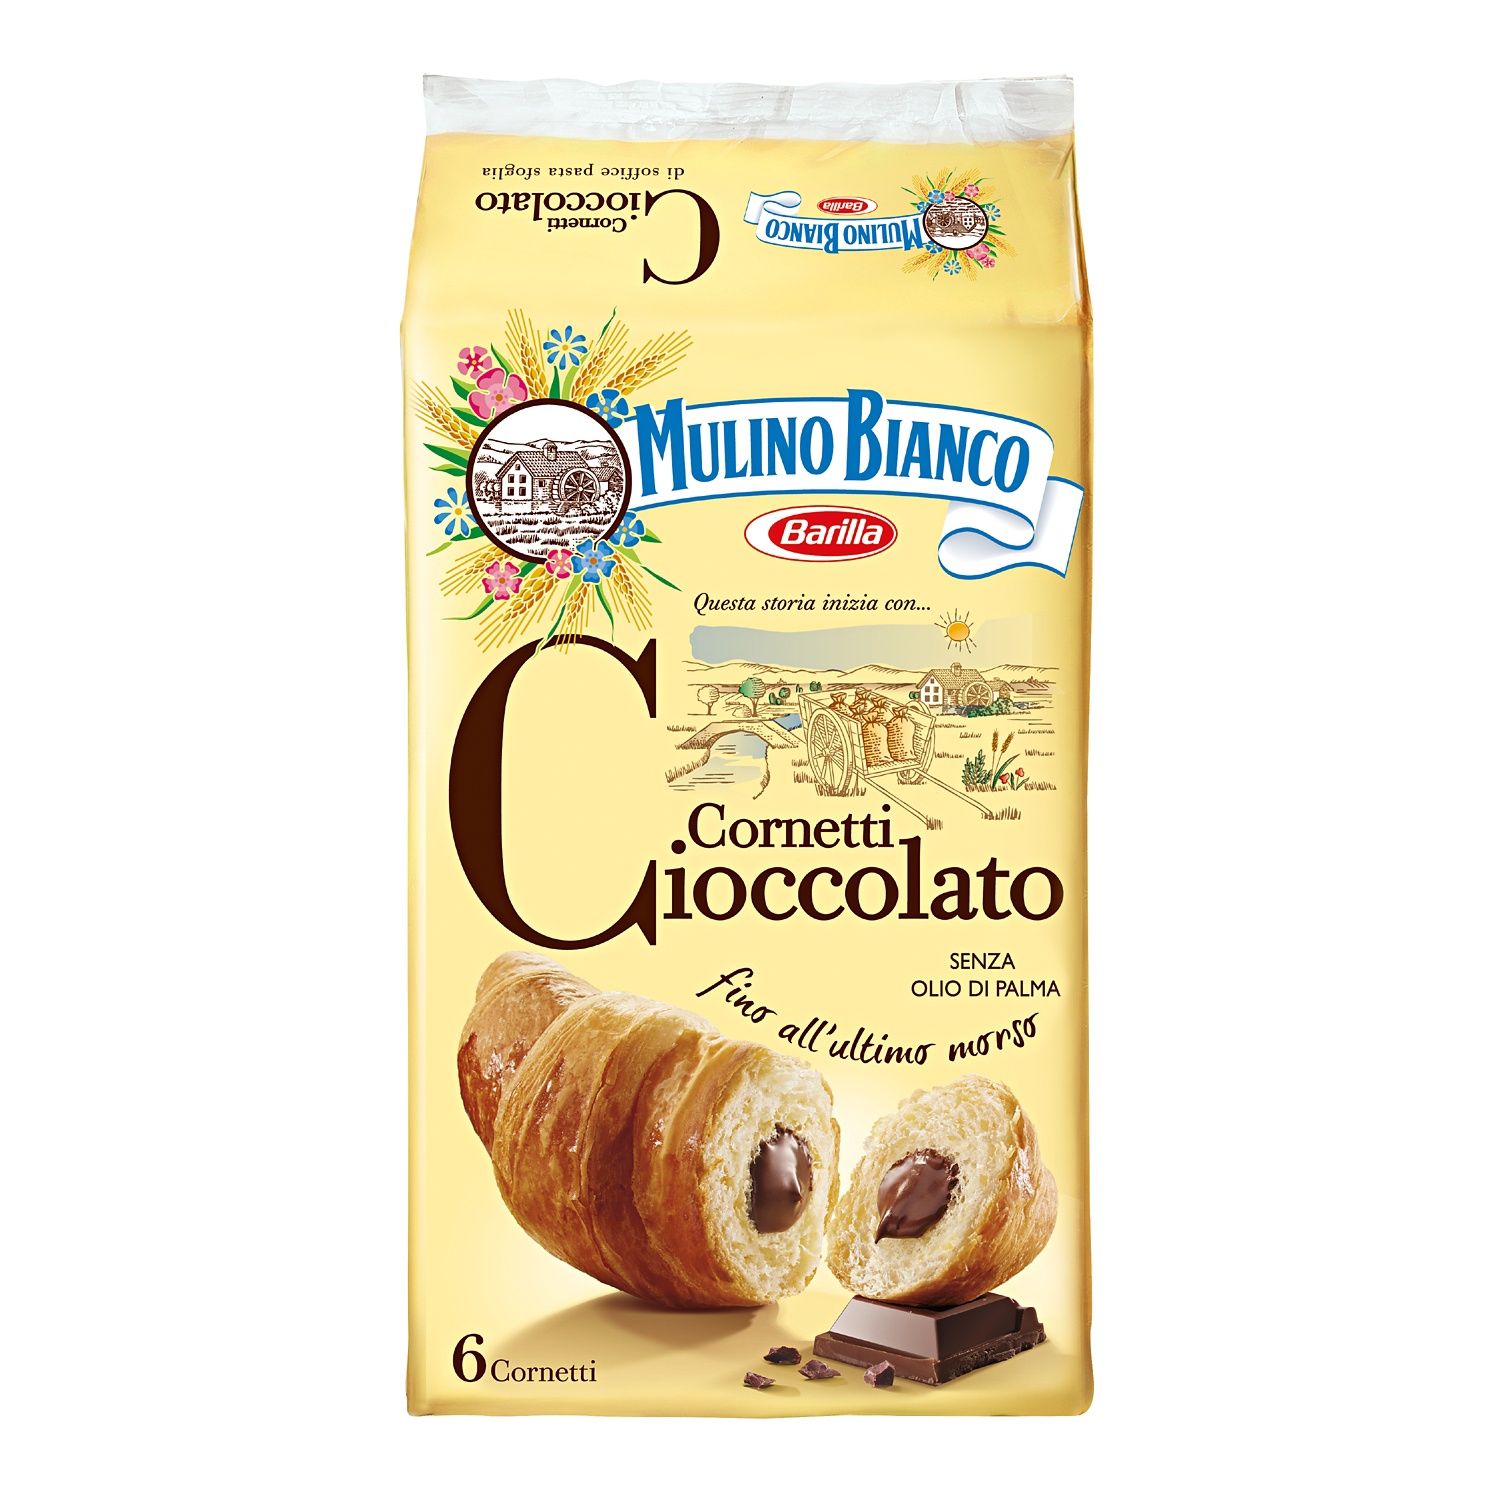 MULINO BIANCO Cornetti al cioccolato